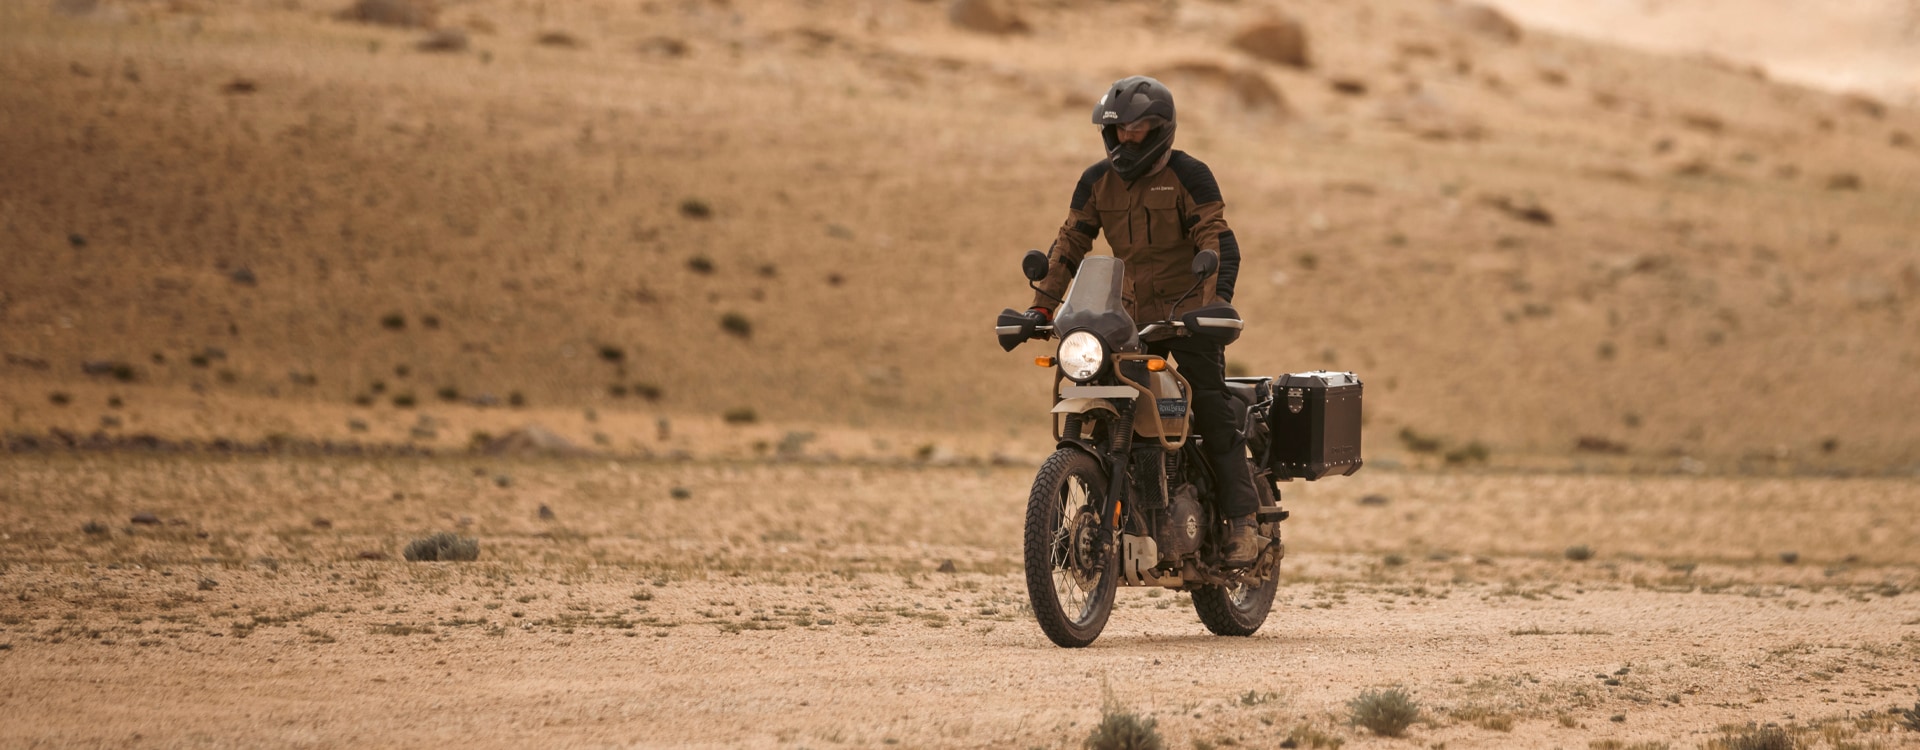 Himalayan 410 - Tour-Minded Design Motorcycle